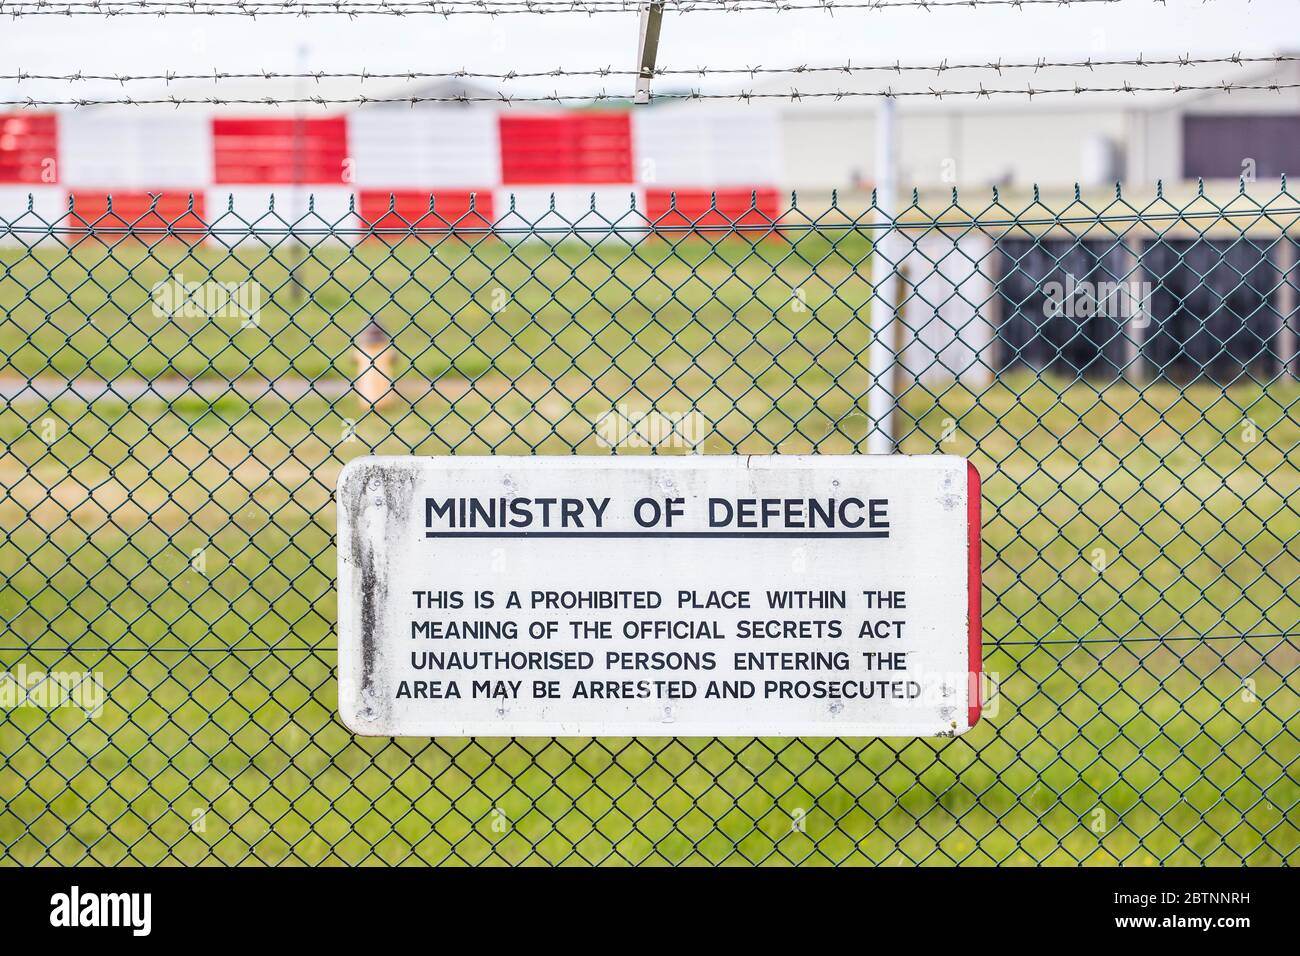 Primo piano Ministero della Difesa nessun accesso al segnale di avvertimento pubblico dietro recinzione di sicurezza: Persone non autorizzate ad essere arrestate, perseguite, RAF Fairford, UK. Foto Stock